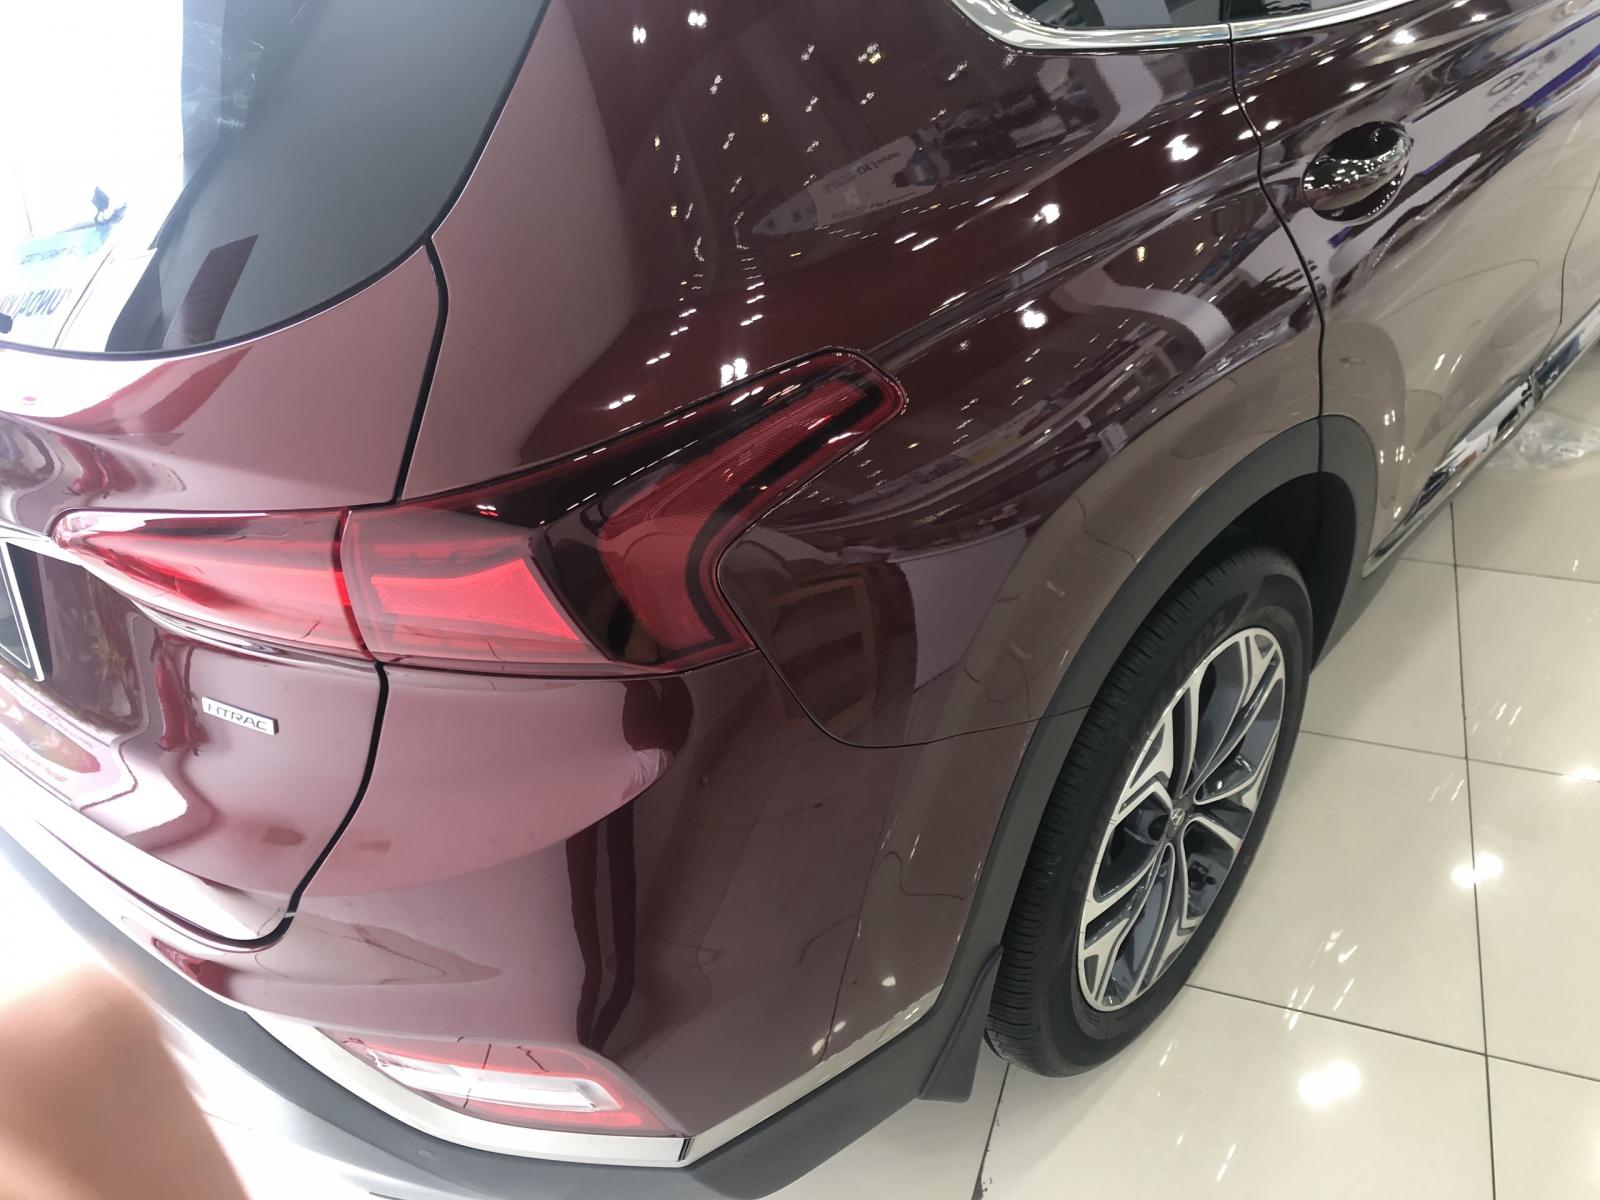 Hyundai Santa Fe Premium 2019 - Santa Fe 2019 xăng cao cấp giá niêm yết